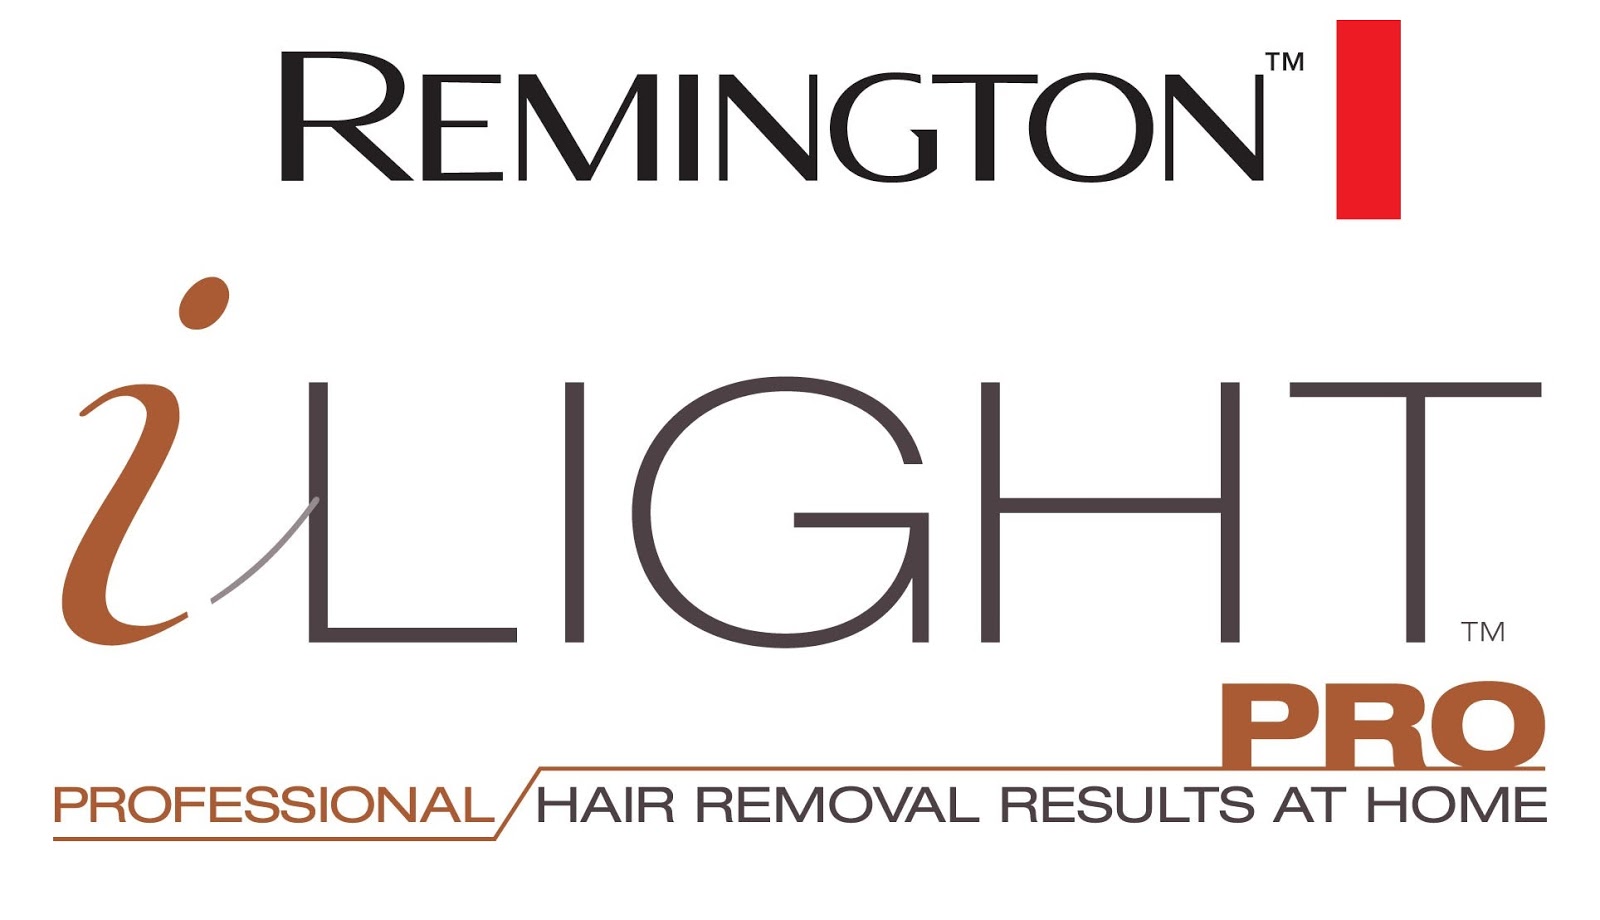 Remington iLightPRO logo